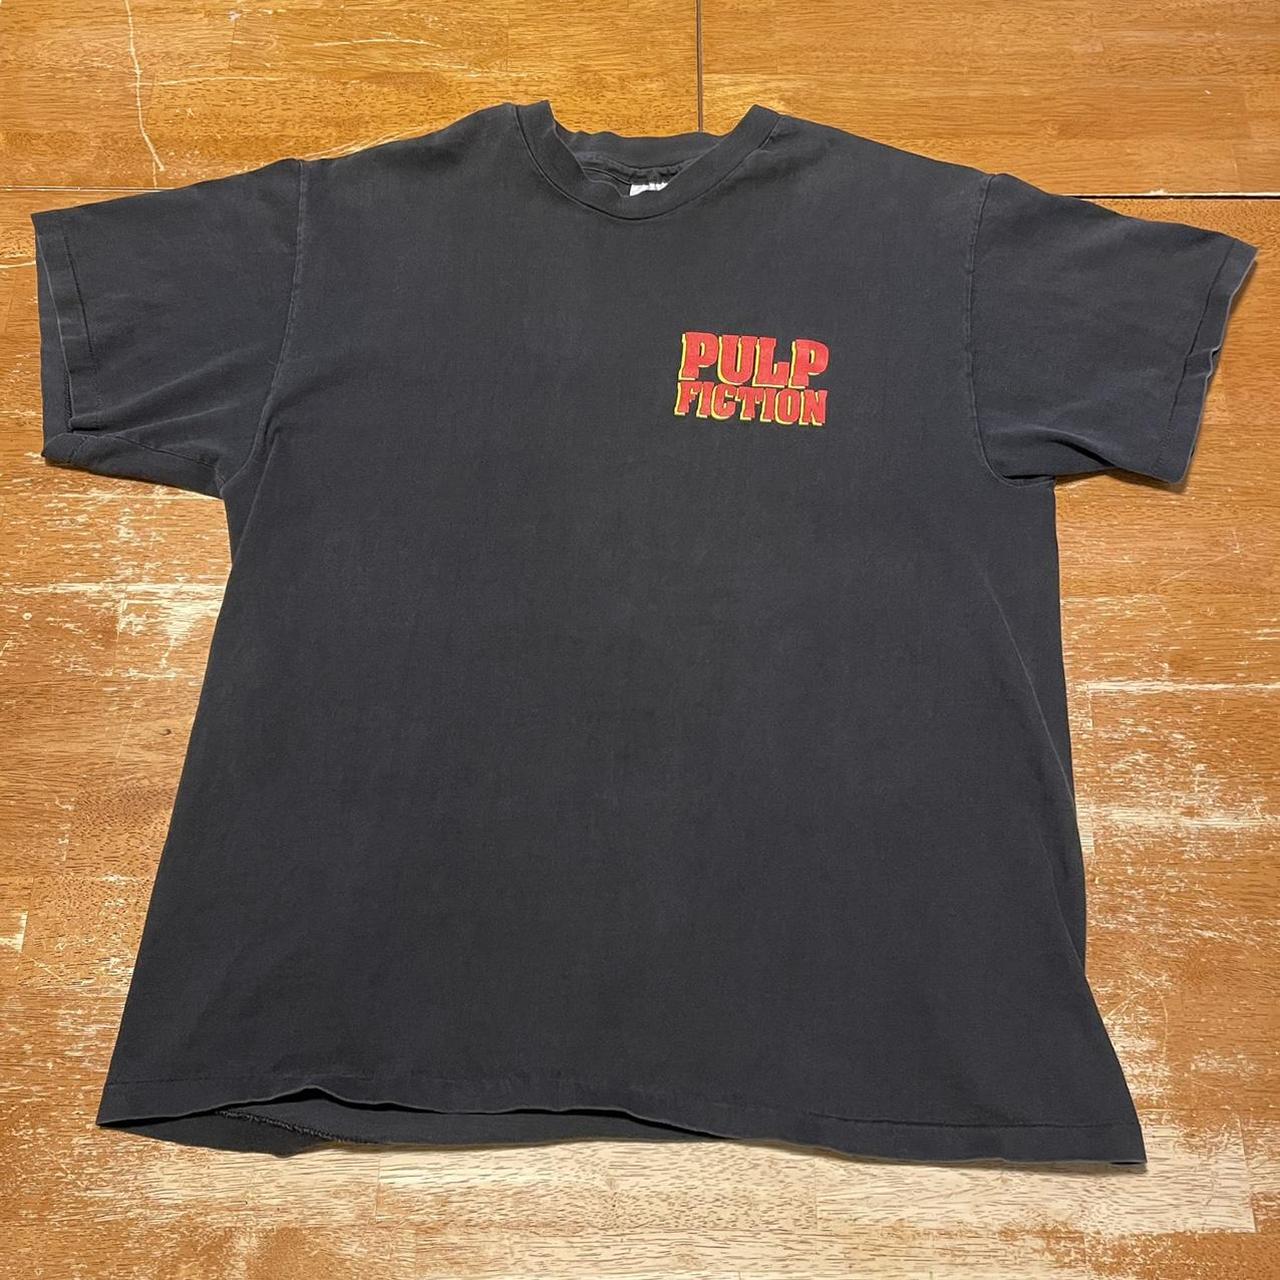 Vintage 90s Pulp Fiction Movie Promo T-Shirt Large...